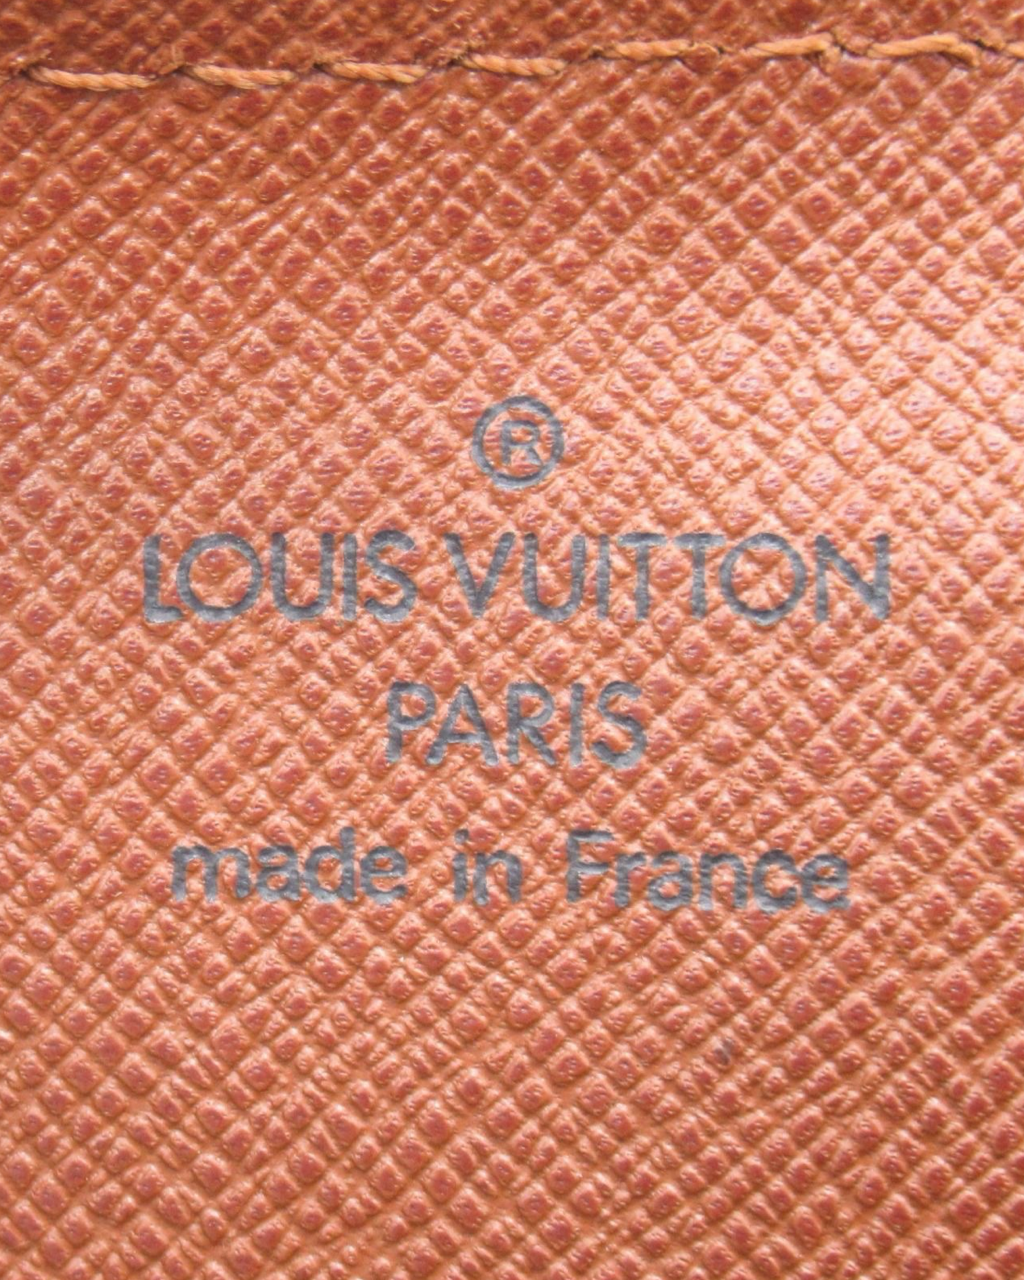 Bolsa Louis Vuitton Papillon